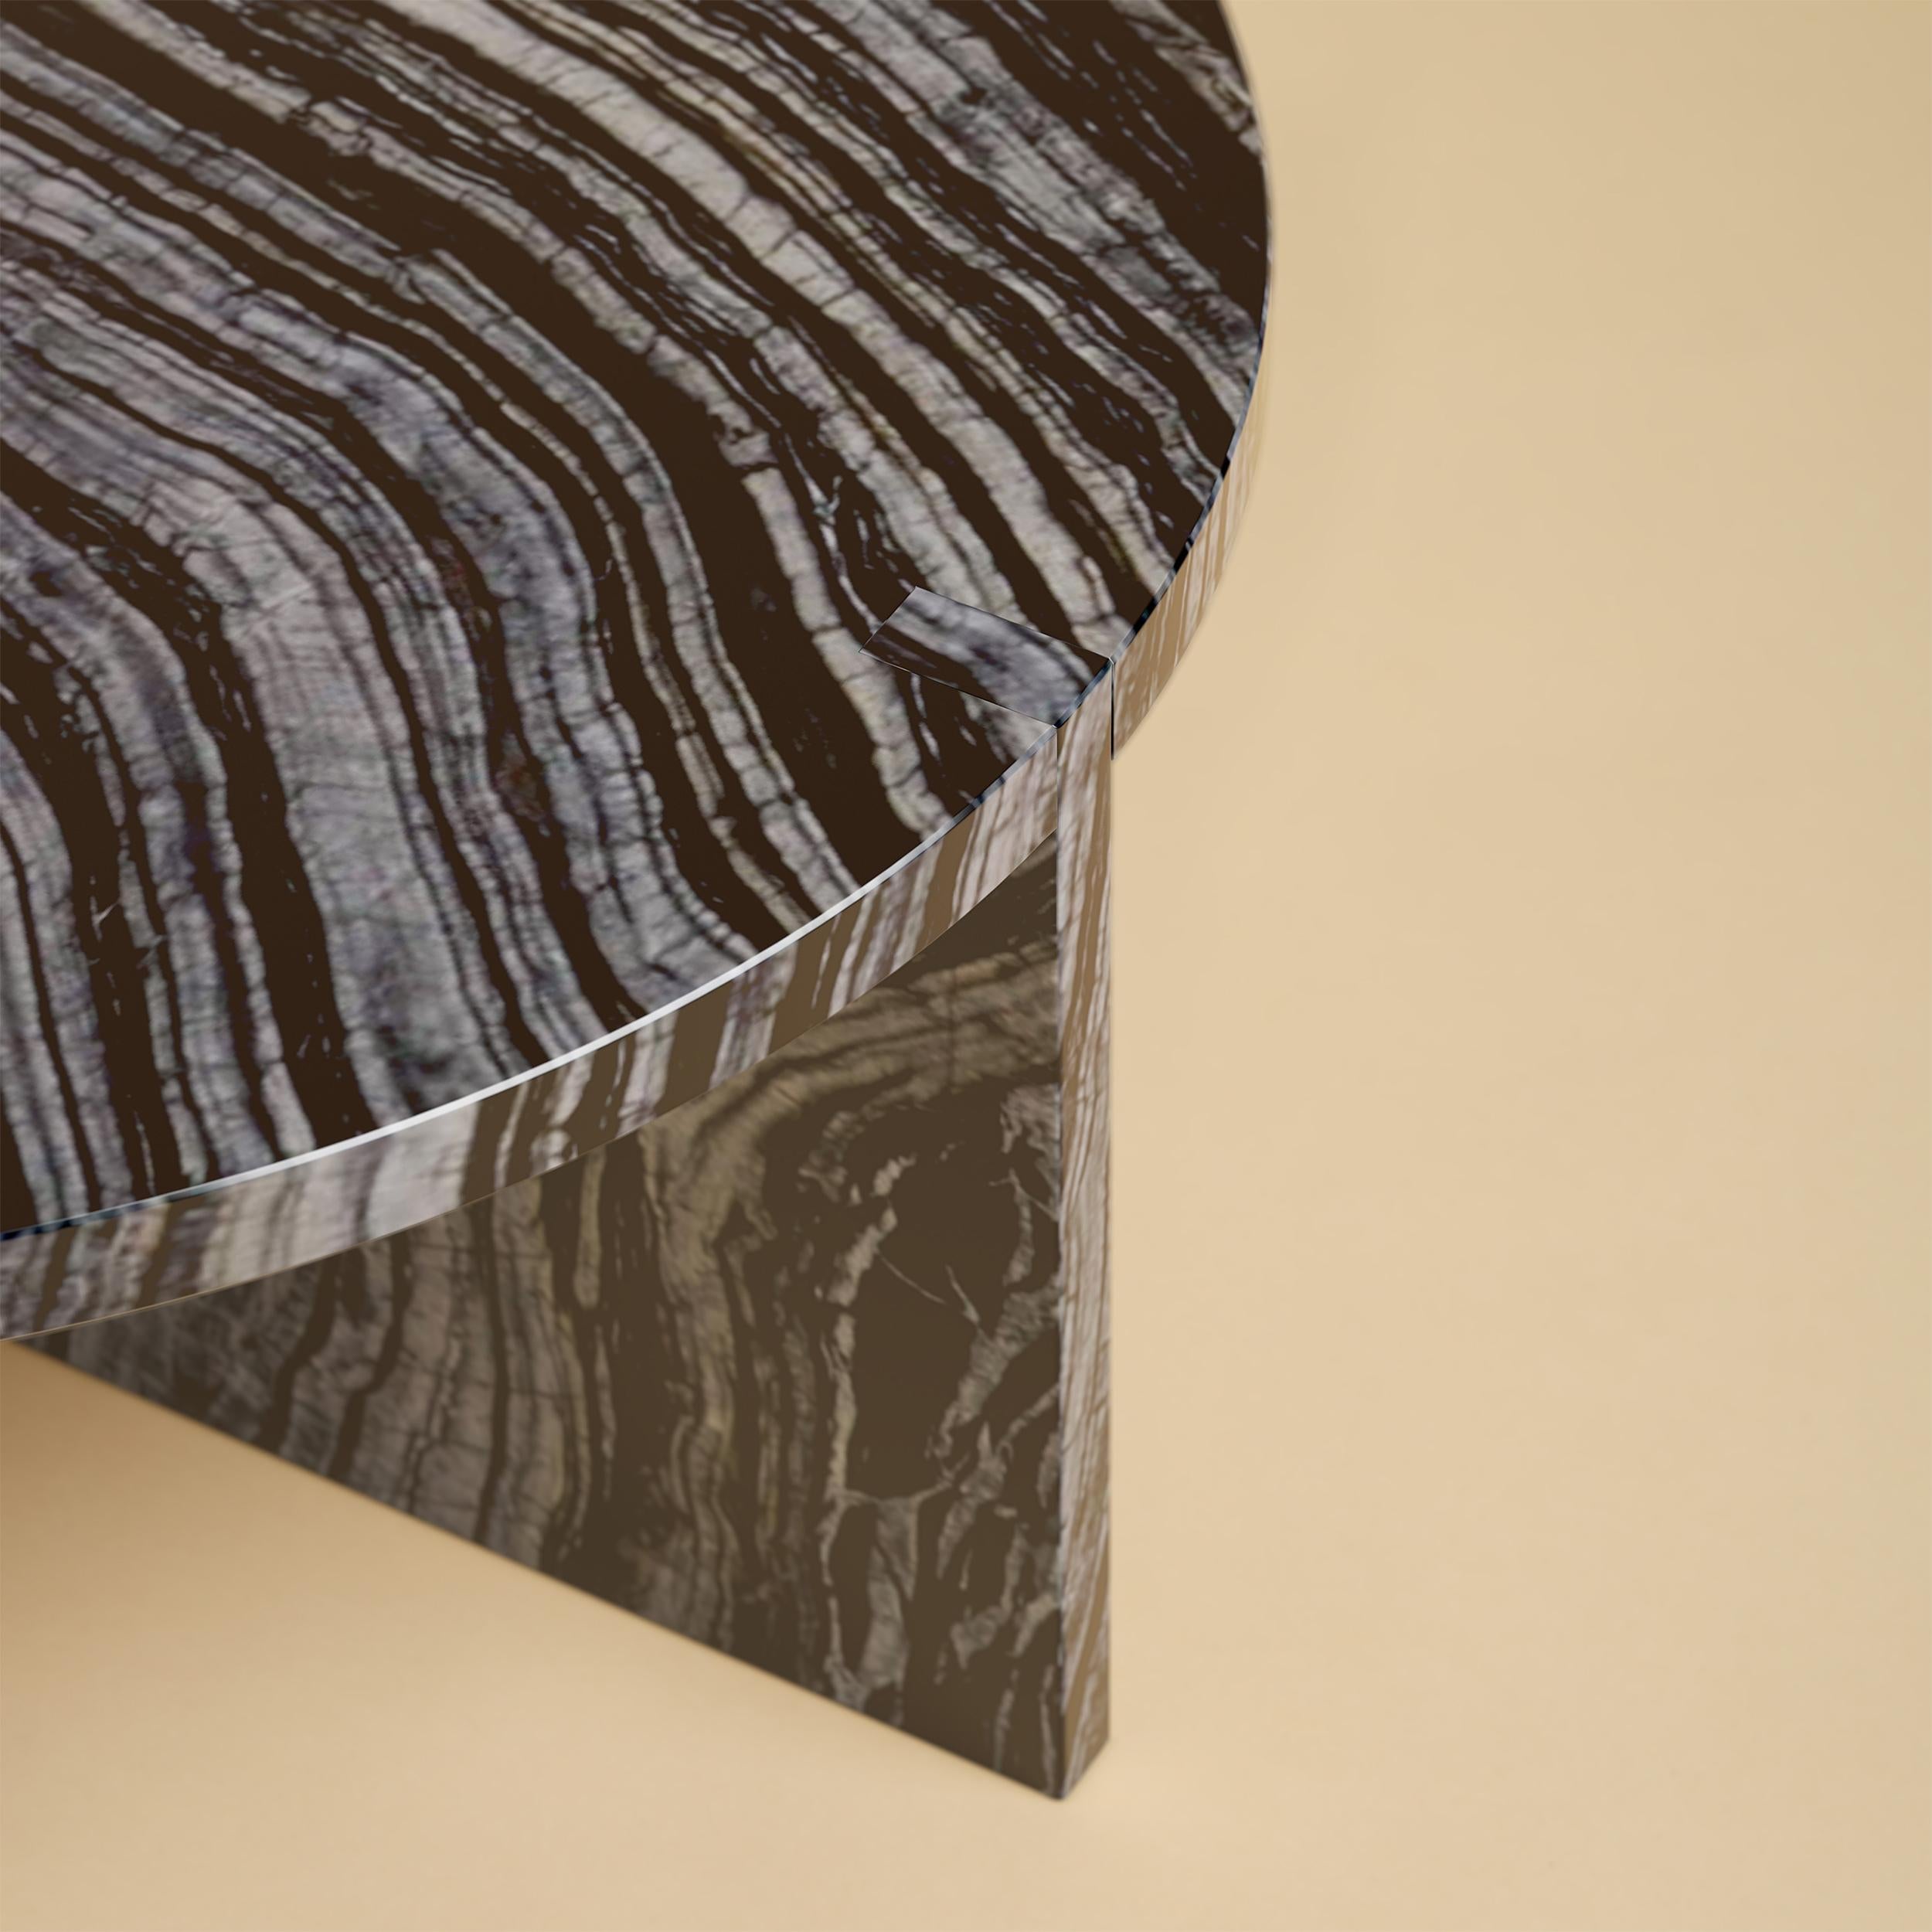 La table basse Hashi est entièrement réalisée en précieux marbre noir du Kenya. 

Le plateau est circulaire et mesure 60 cm de diamètre. Les pieds sont constitués de deux plaques de marbre dont une partie est incrustée sur le plateau, ce qui